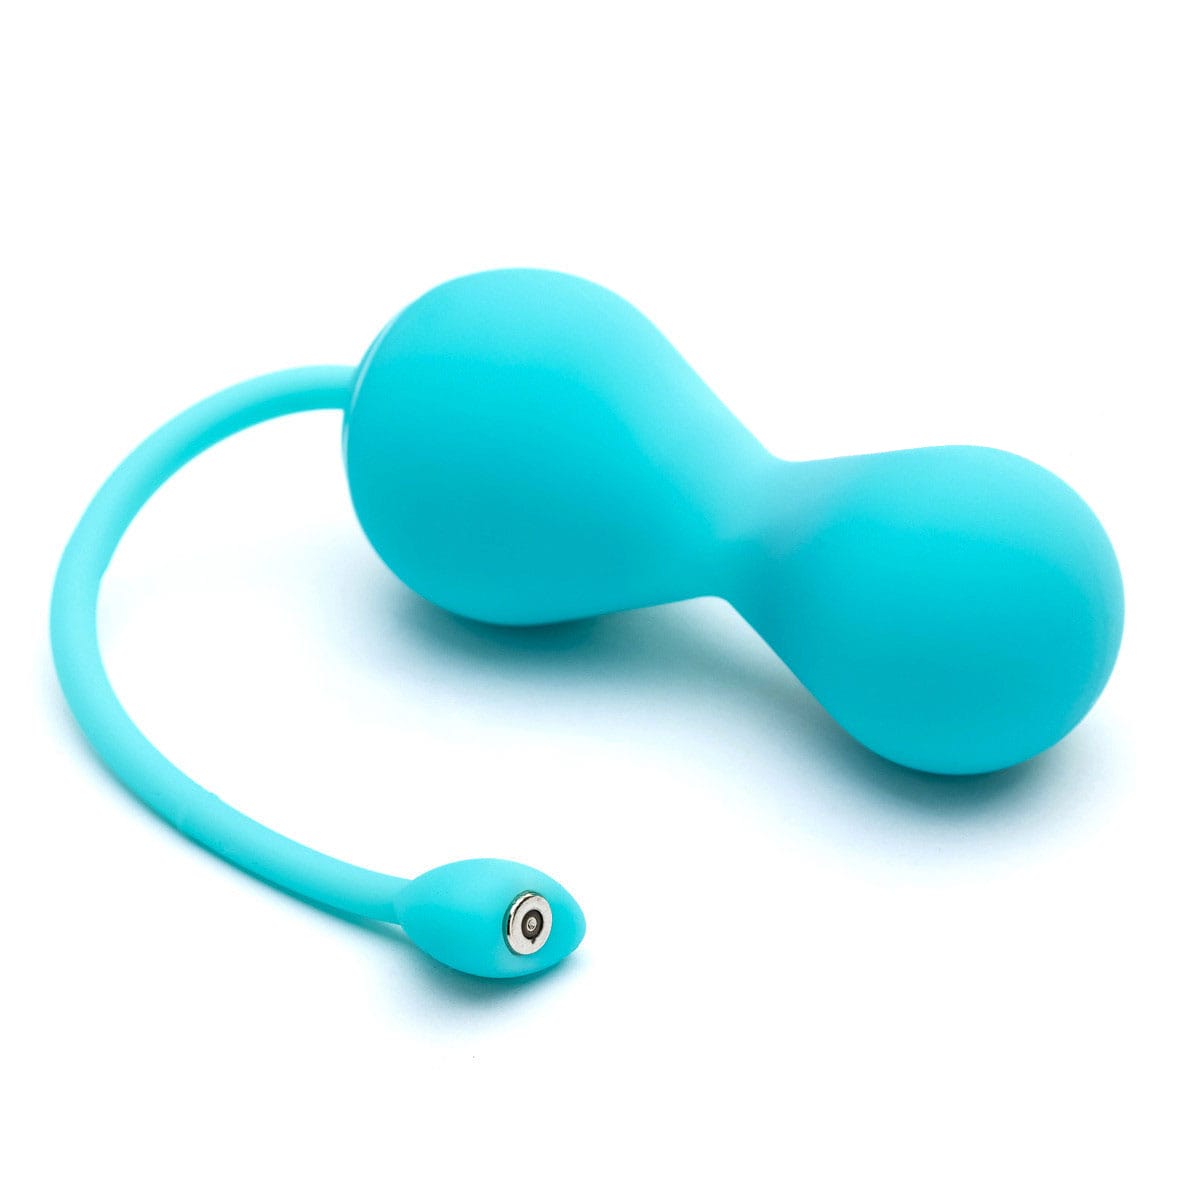 Buy OhMiBod Lovelife Krush kegel exercise device for pelvic floor muscle strengthening.